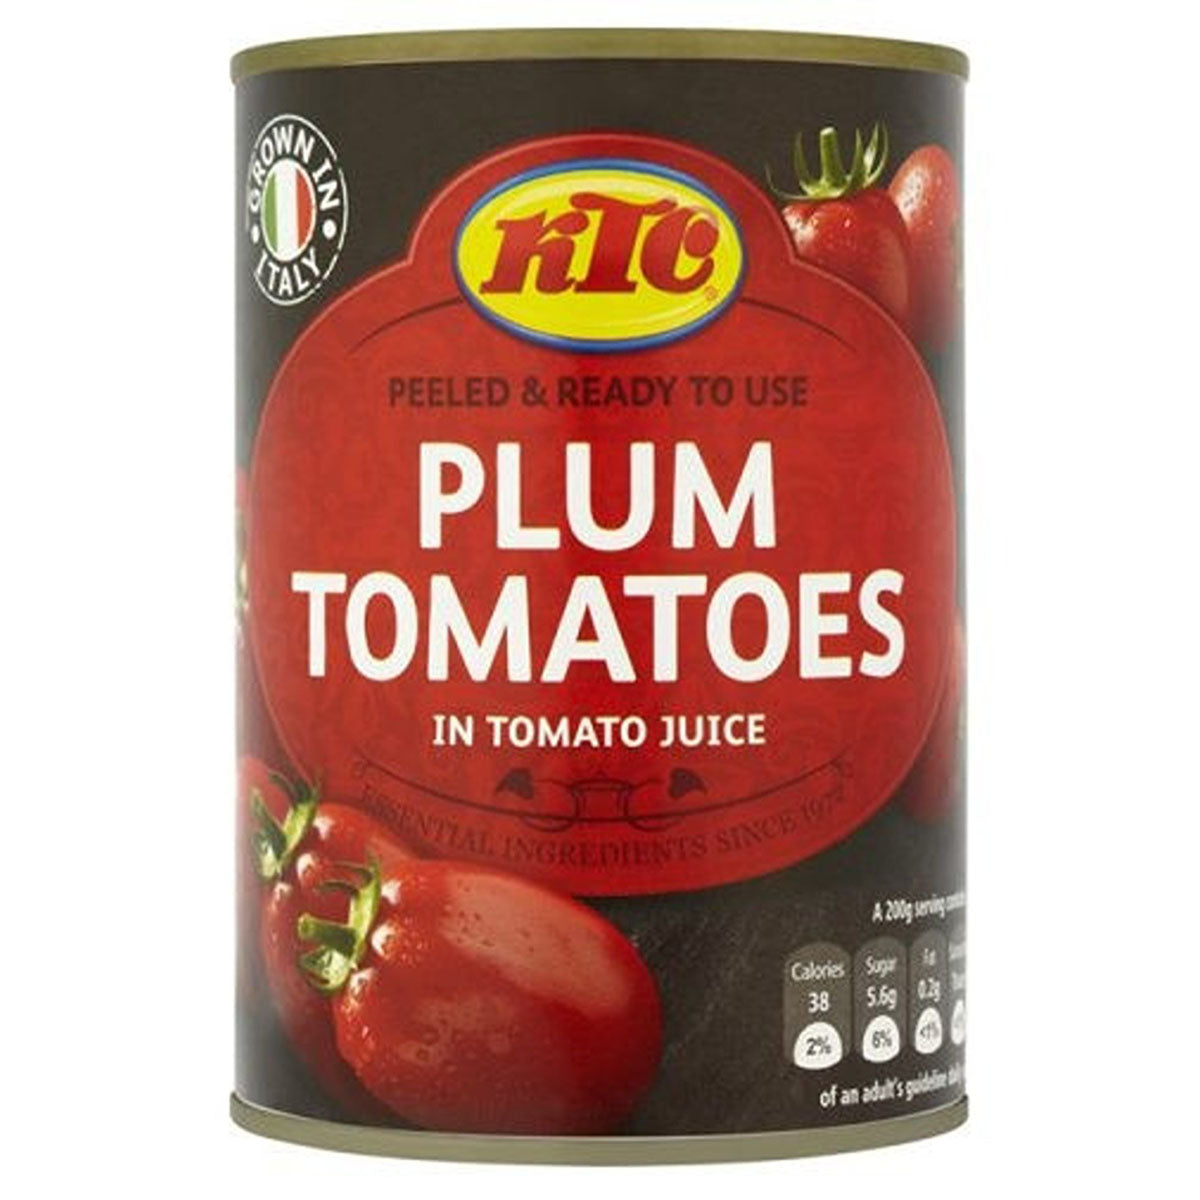 KTC - Plum Tomatoes in Tomato Juice - 400g by KTC.